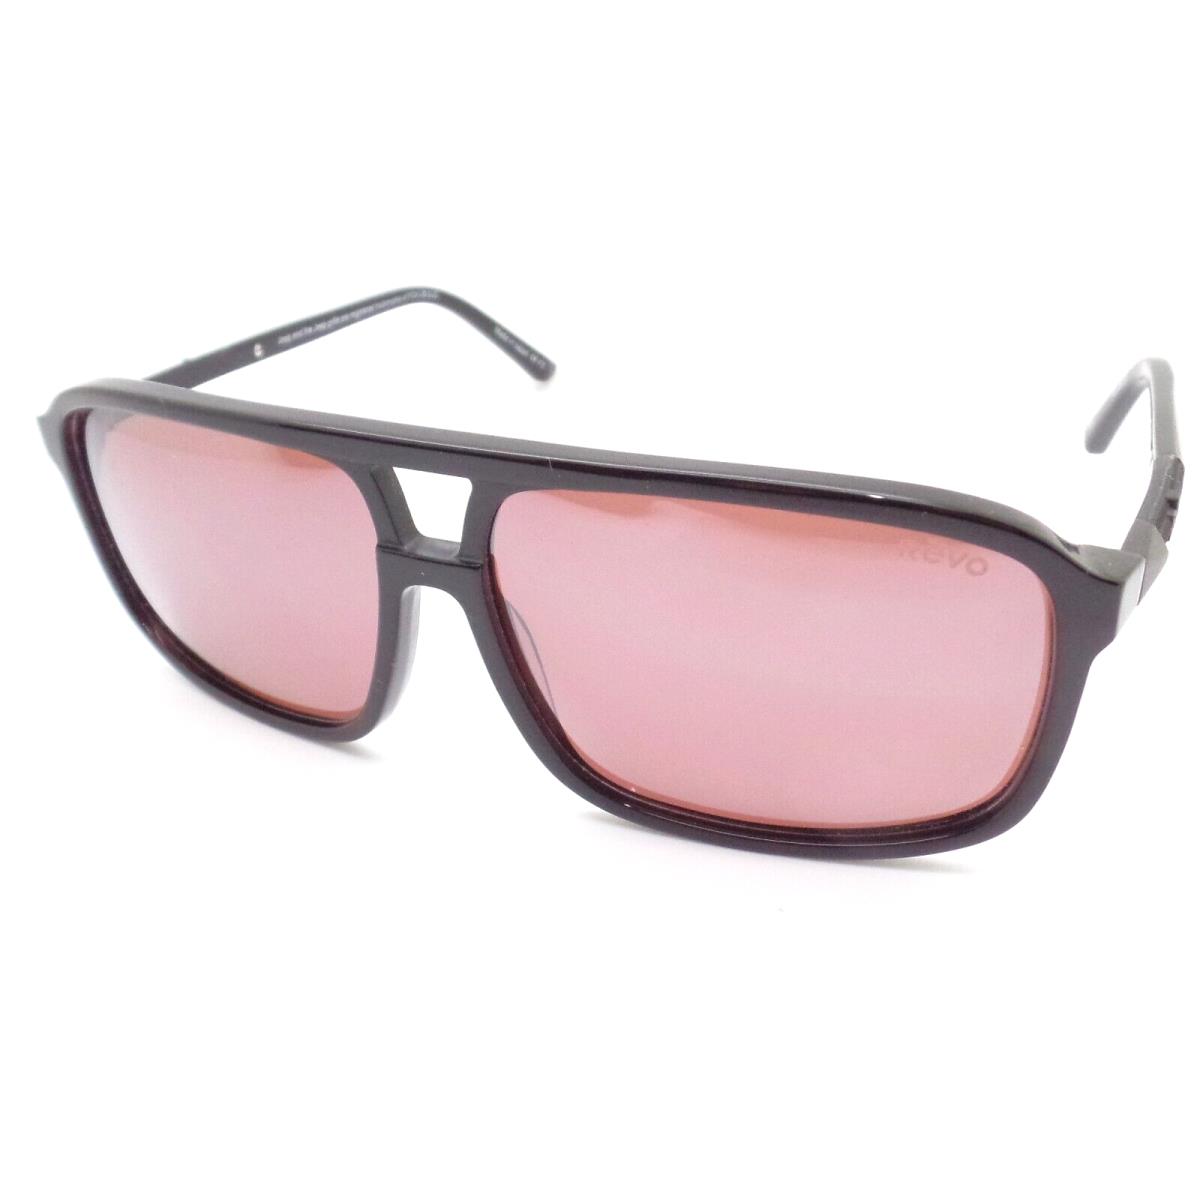 Revo sunglasses Desert - Frame: Gloss Black, Lens: 0